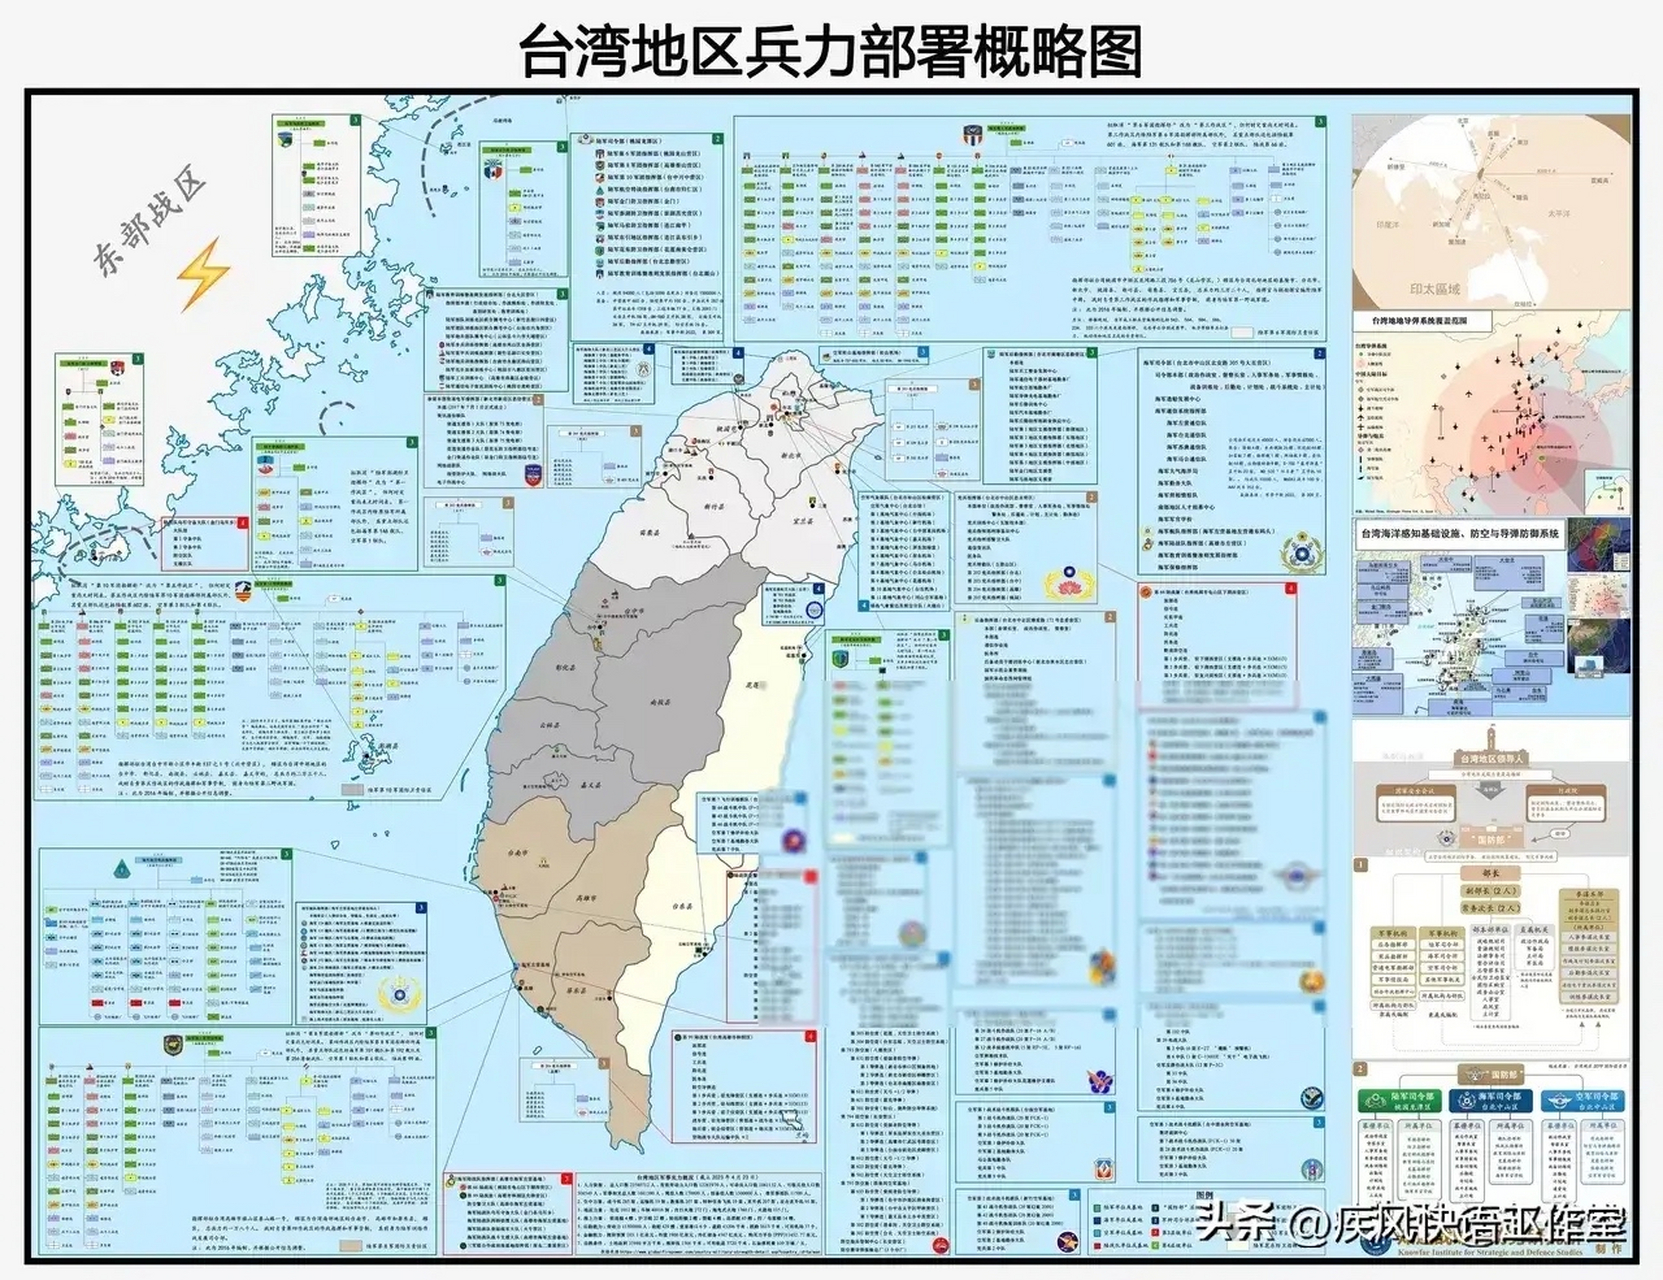 中国台湾这个军事部署图如果是真的,那就证实了以前许多人的猜测,东线